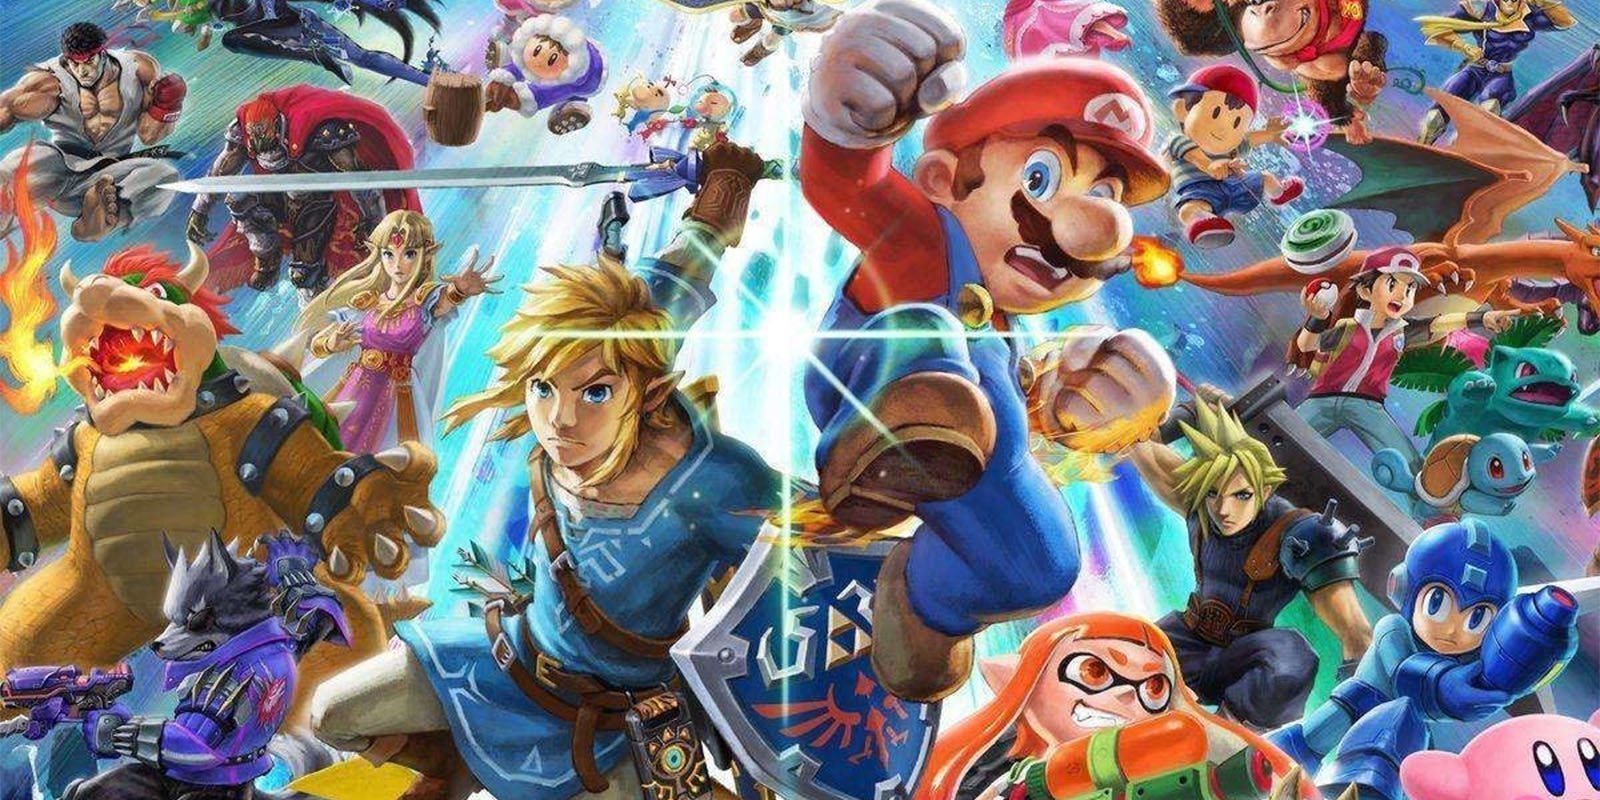 'Super Smash Bros. Ultimate' no está enfocado a los esports